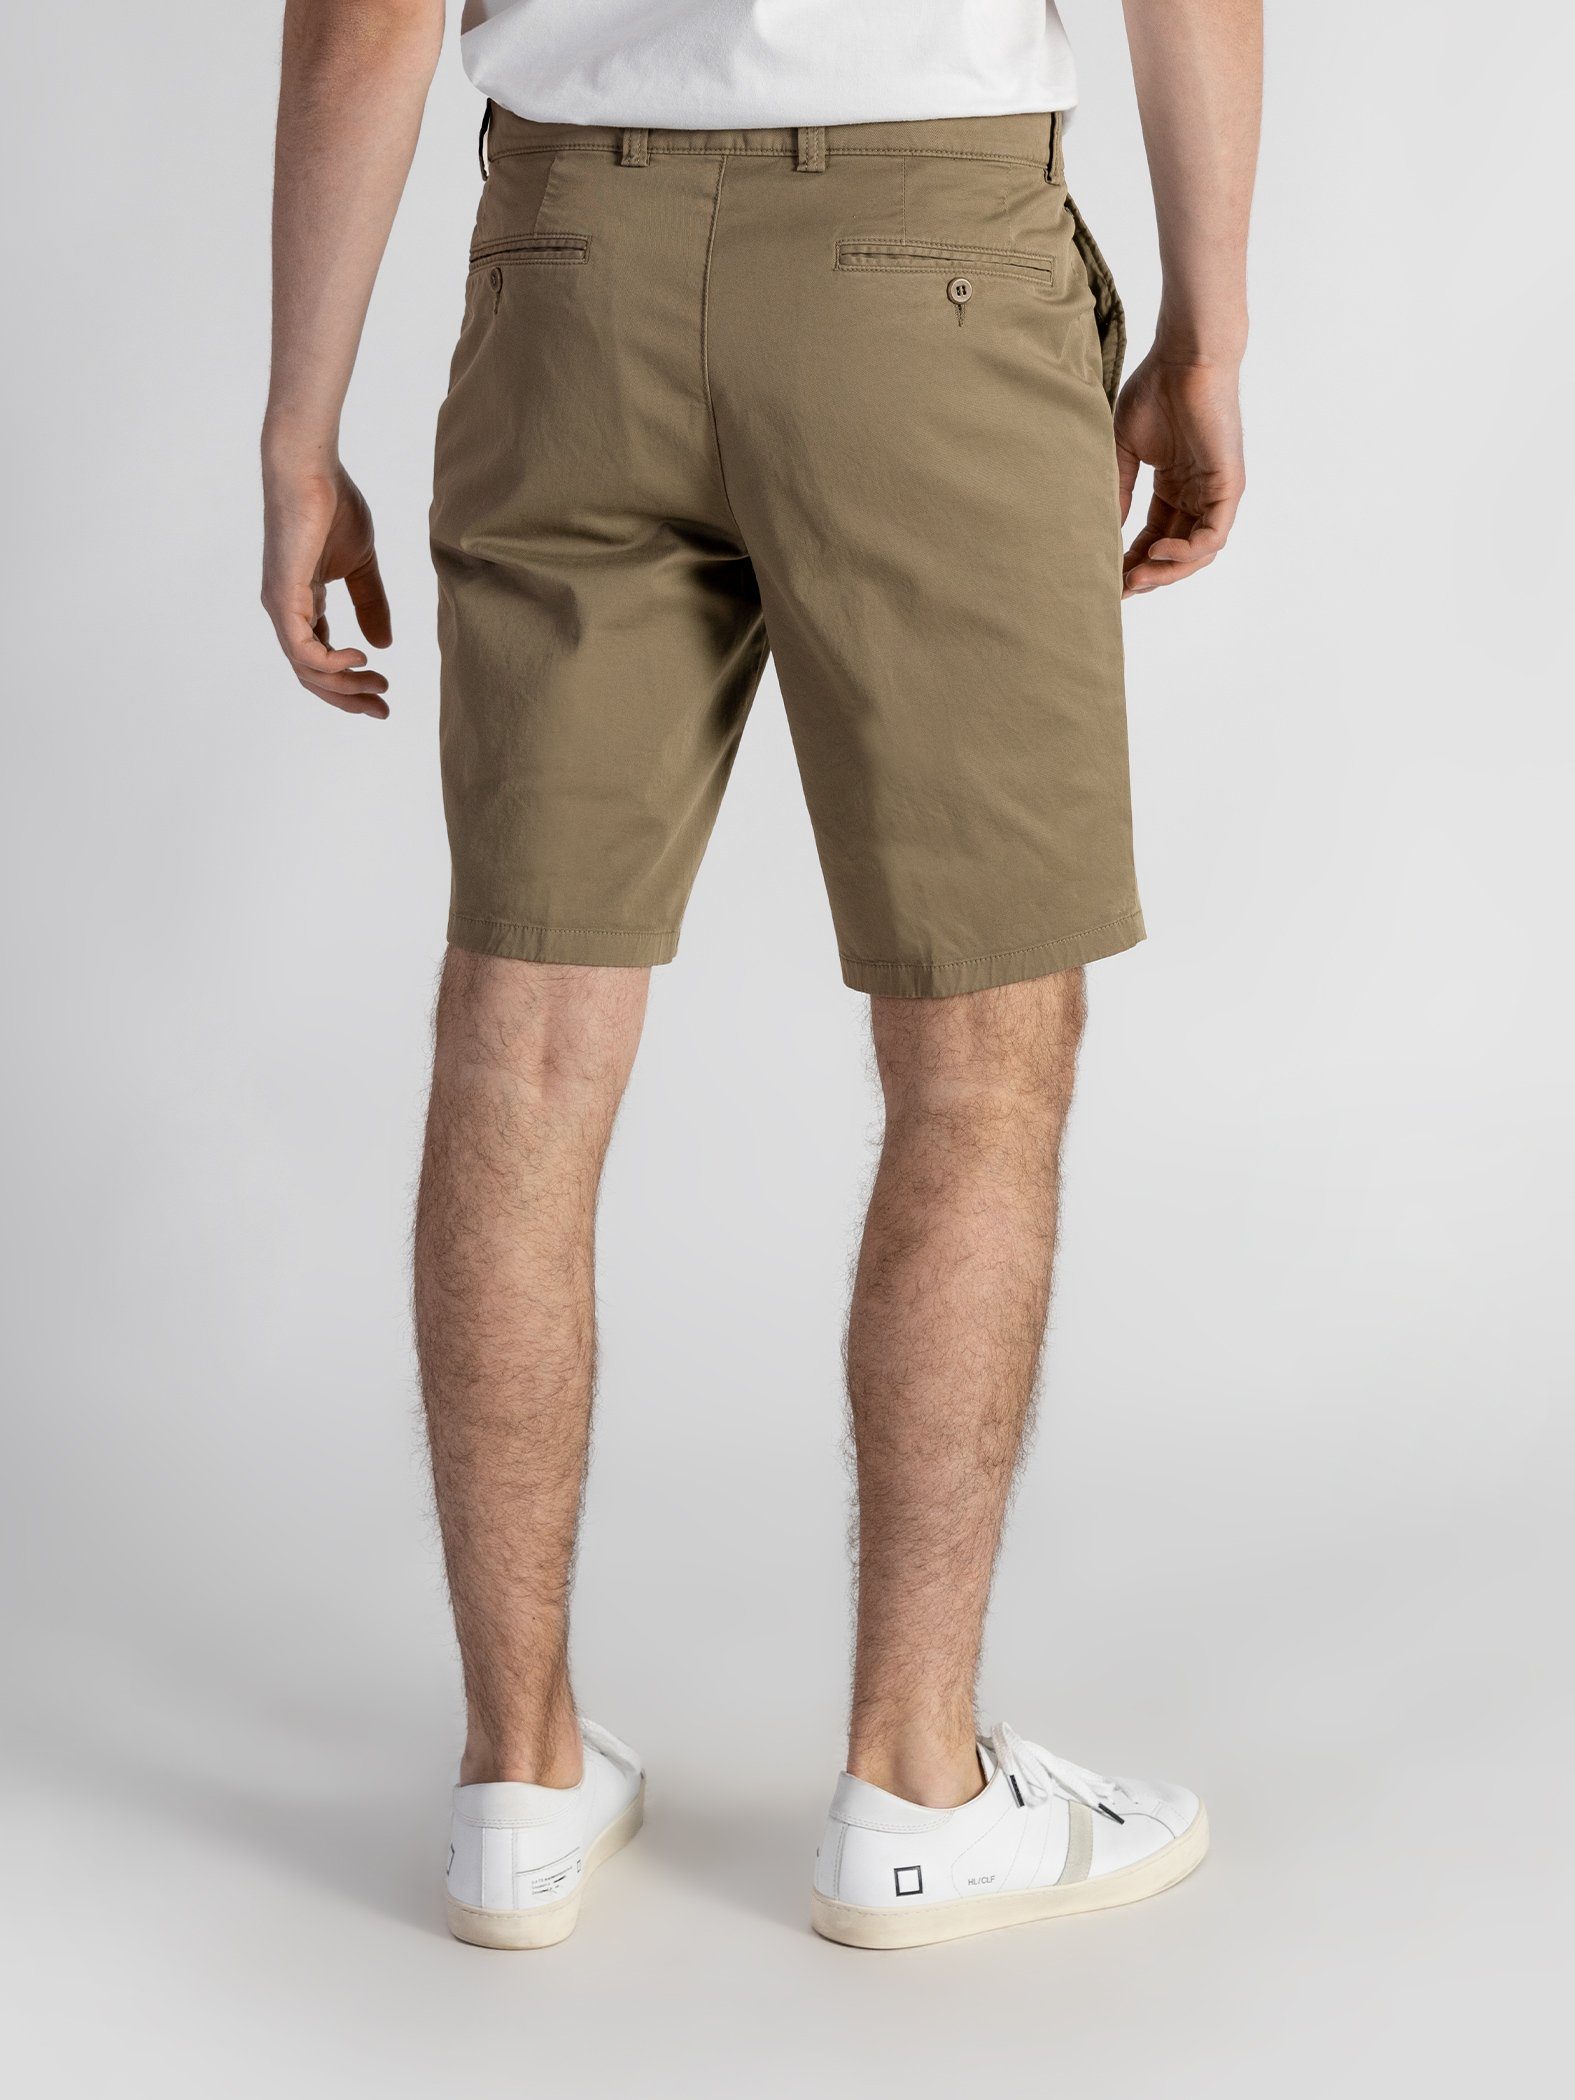 GOTS-zertifiziert Bund, Farbauswahl, Shorts Beige mit Shorts TwoMates elastischem